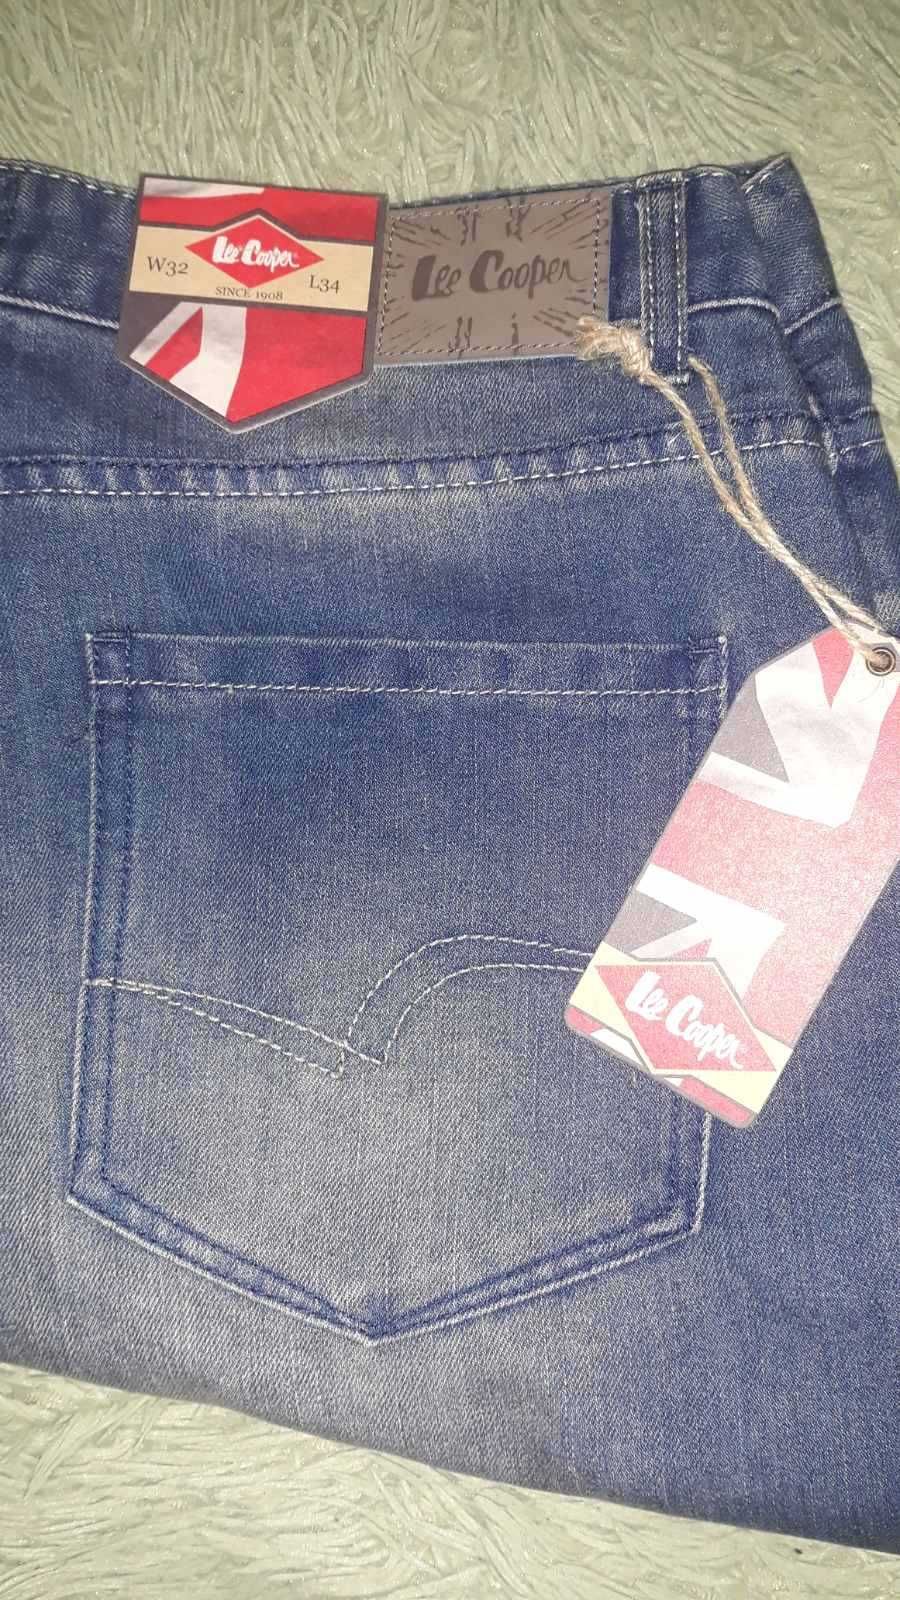 Продам новые фирменные джинсы Lee Cooper